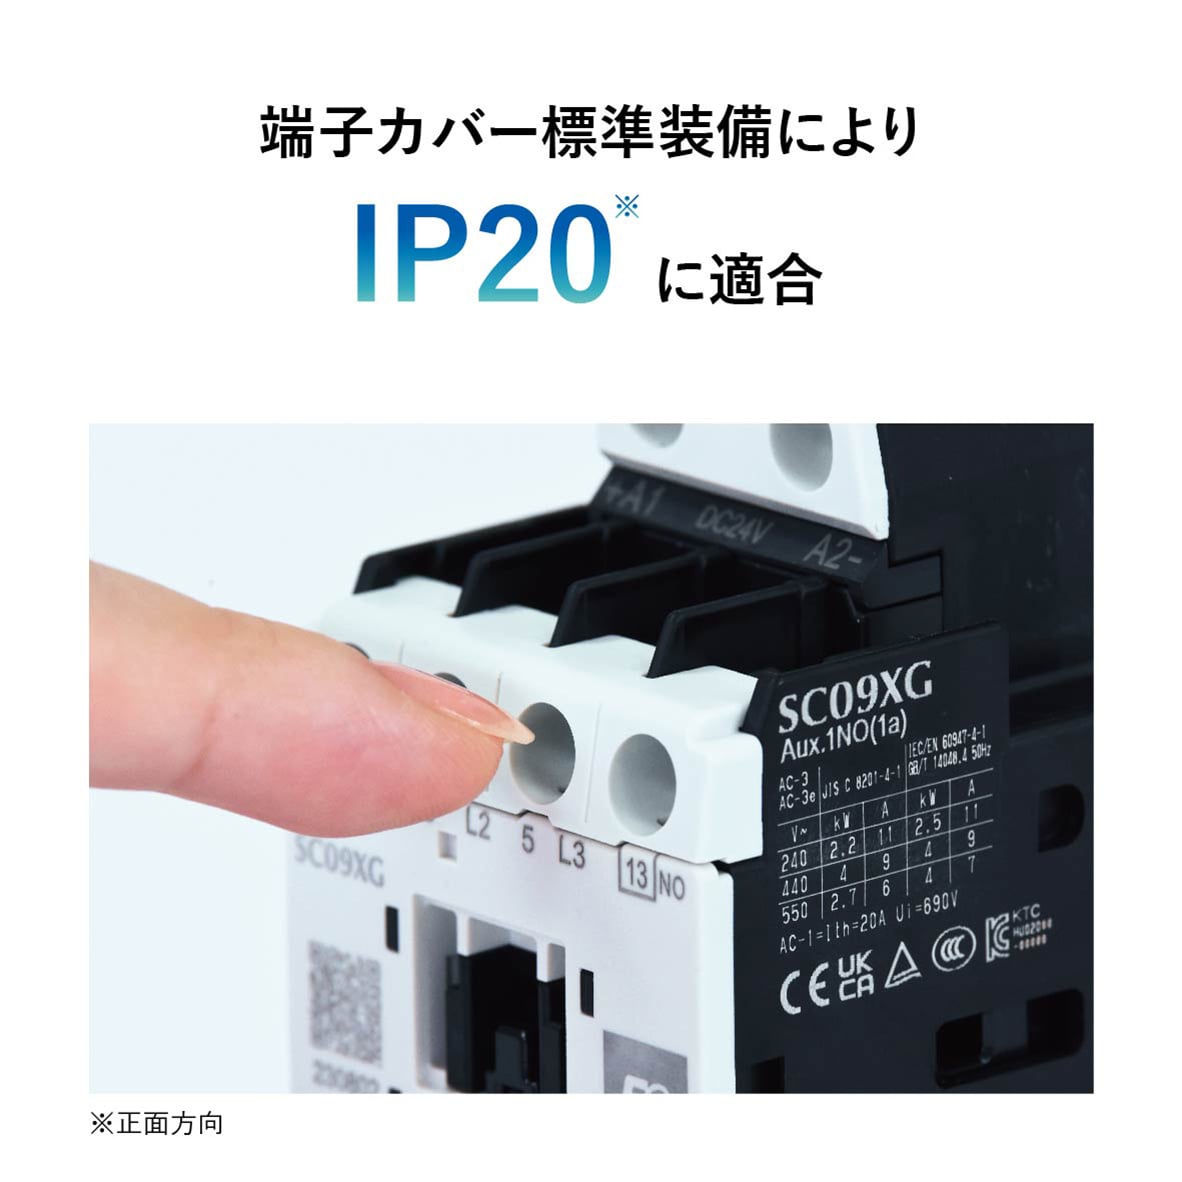 IP20に適合した端子カバーを標準装備